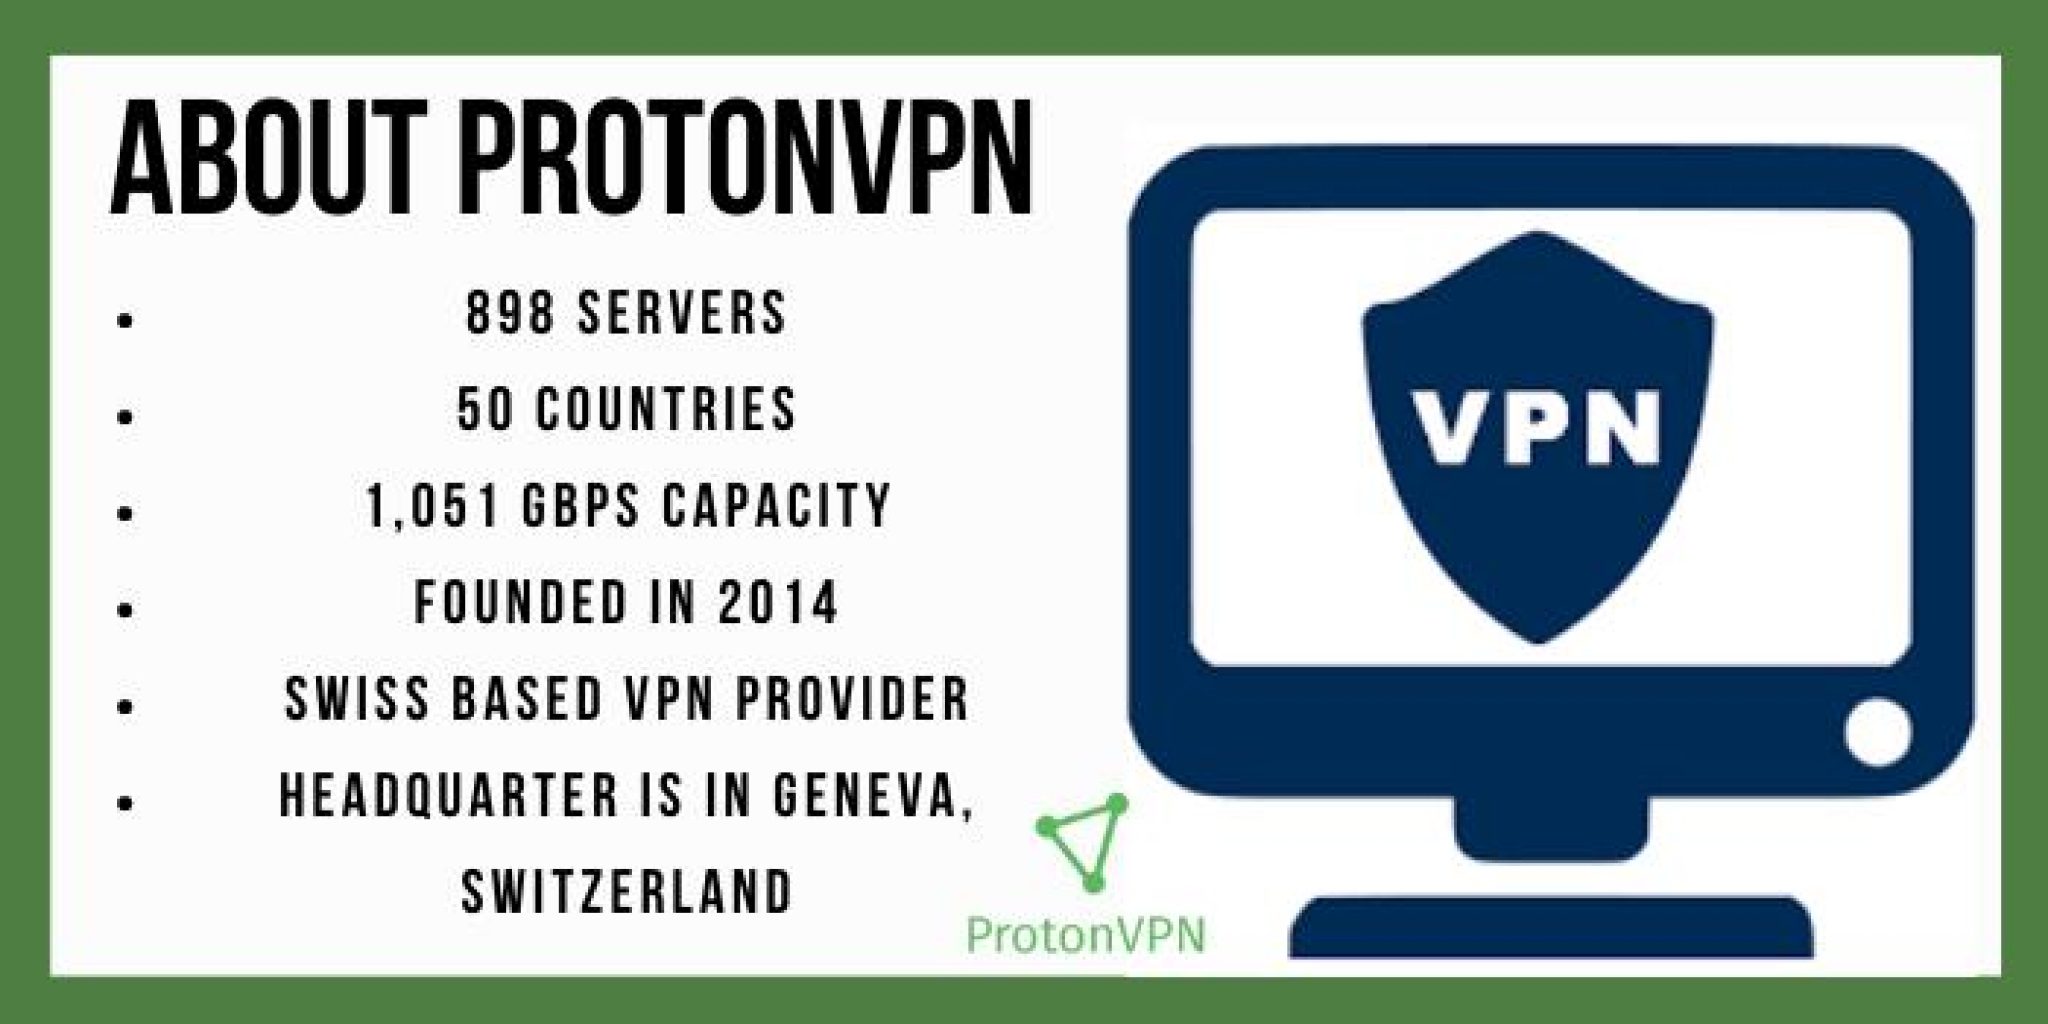 does free protonvpn works fpr torrenting